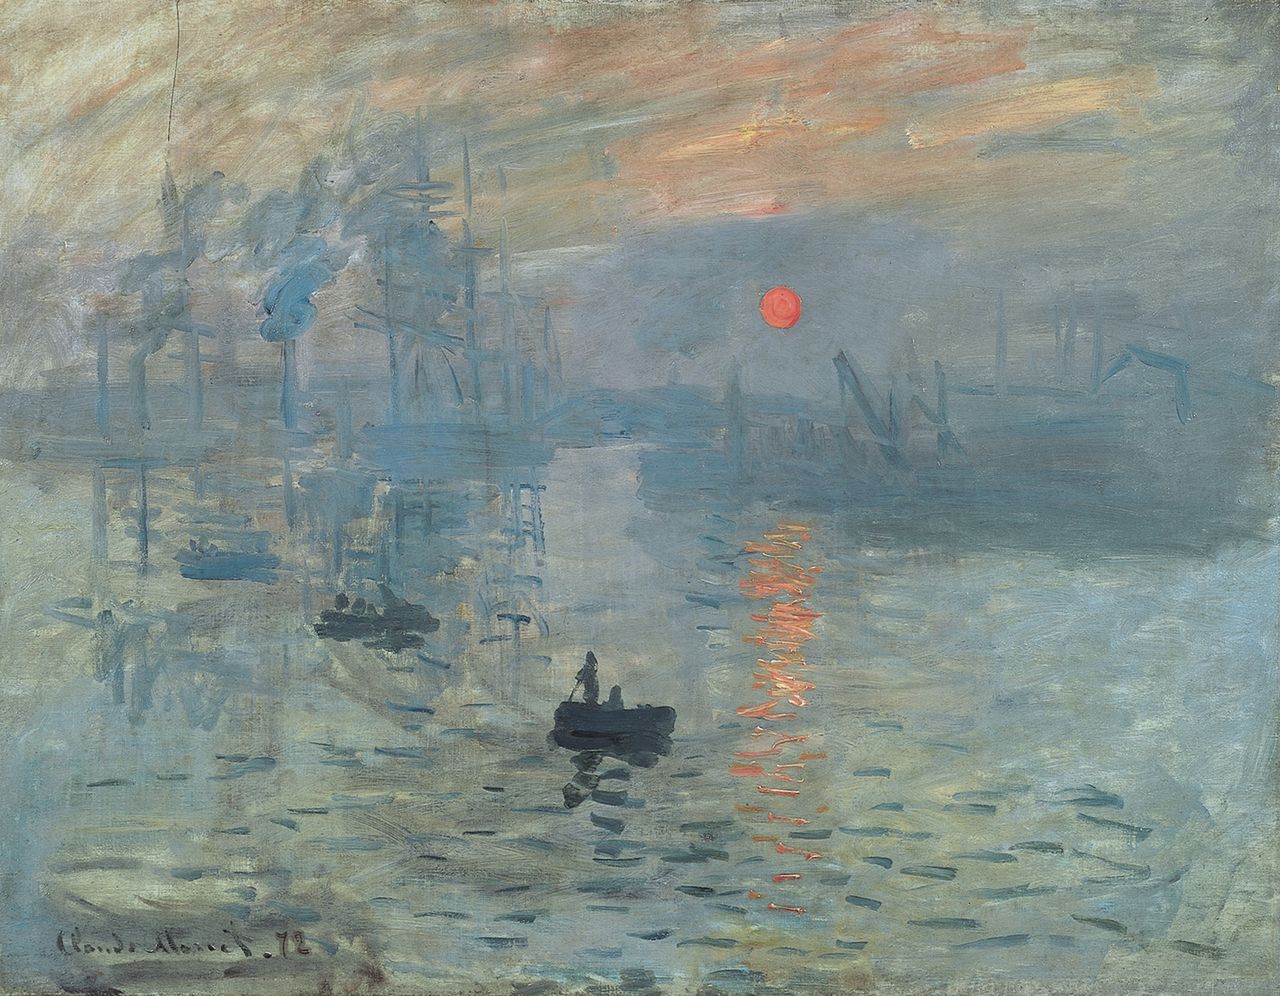 Czy impresjoniści przedstawiali na swoich obrazach smog?